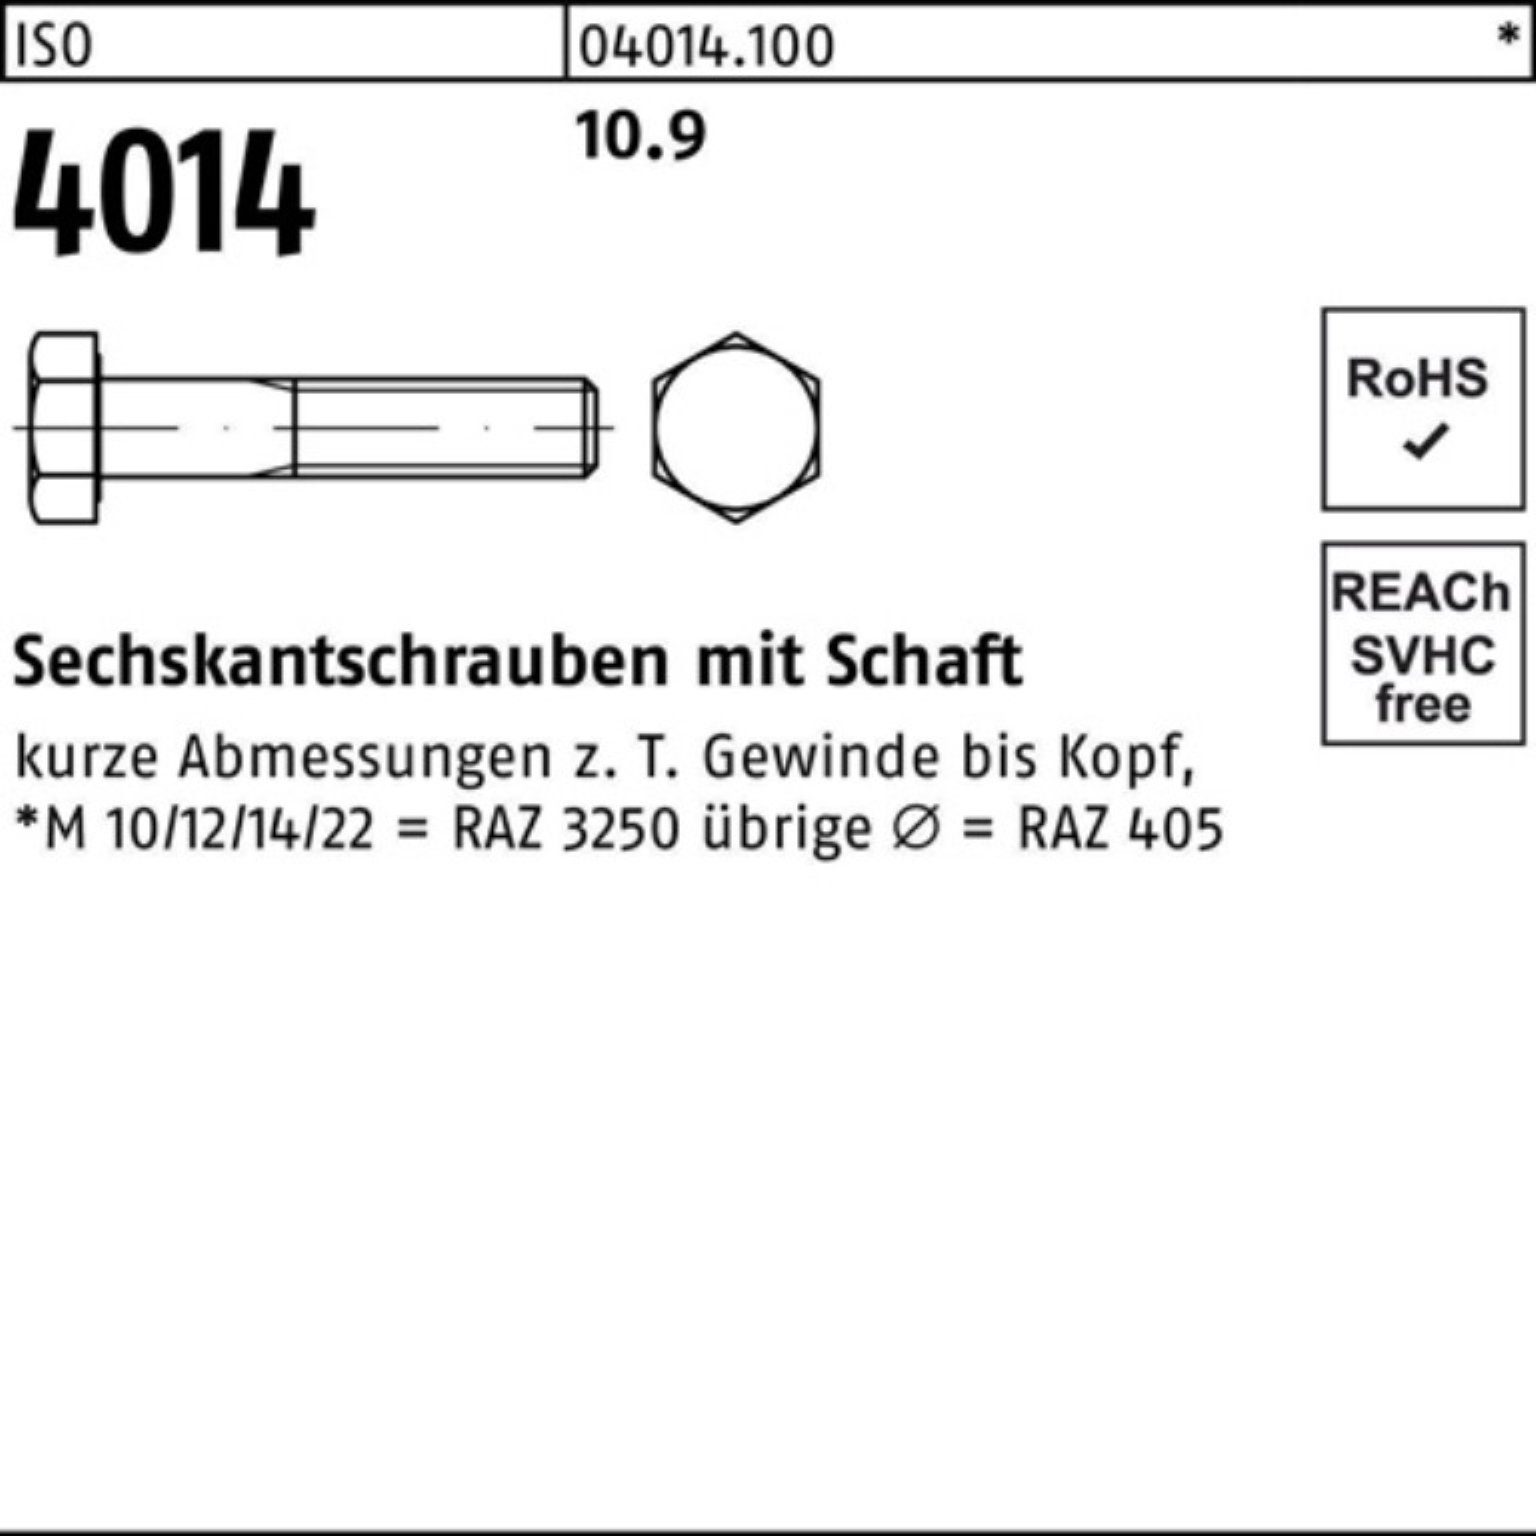 Sechskantschraube 100er Sechskantschraube 1 Pack M36x 4014 IS Stück 10.9 Schaft Bufab ISO 290